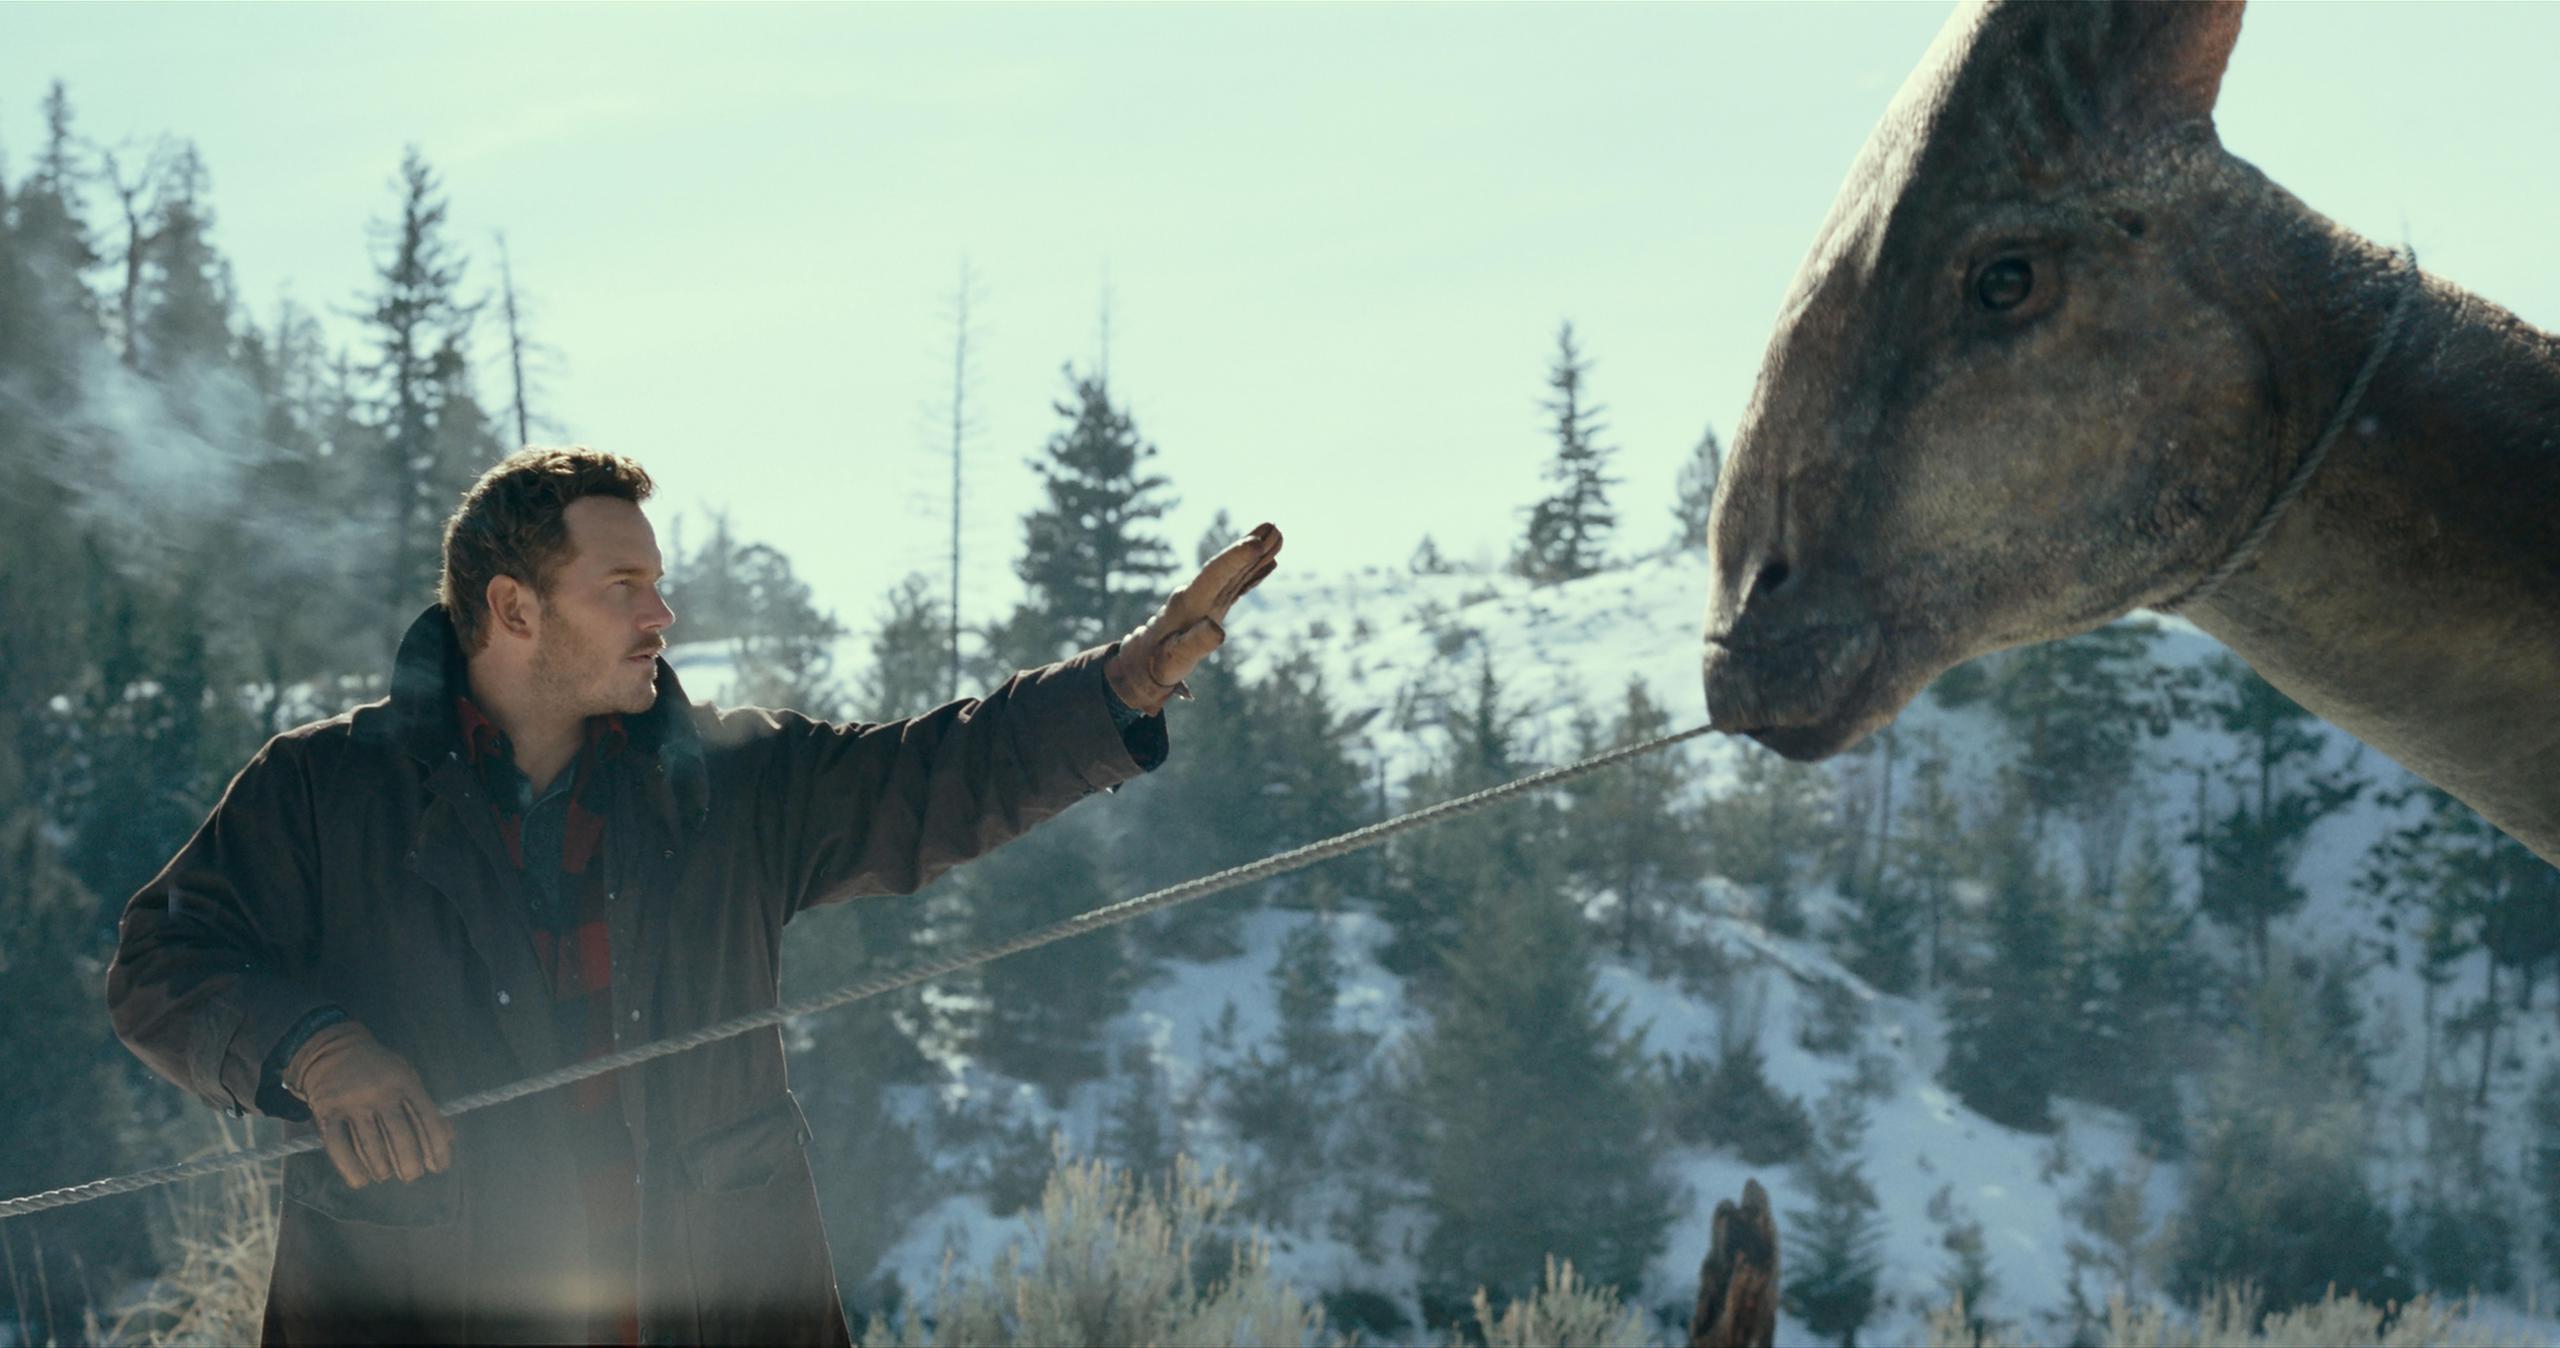 El actor Chris Pratt, en el papel de Owen Grady, se acerca a un parasaurolophus en una escena de la película Jurassic World Dominion.